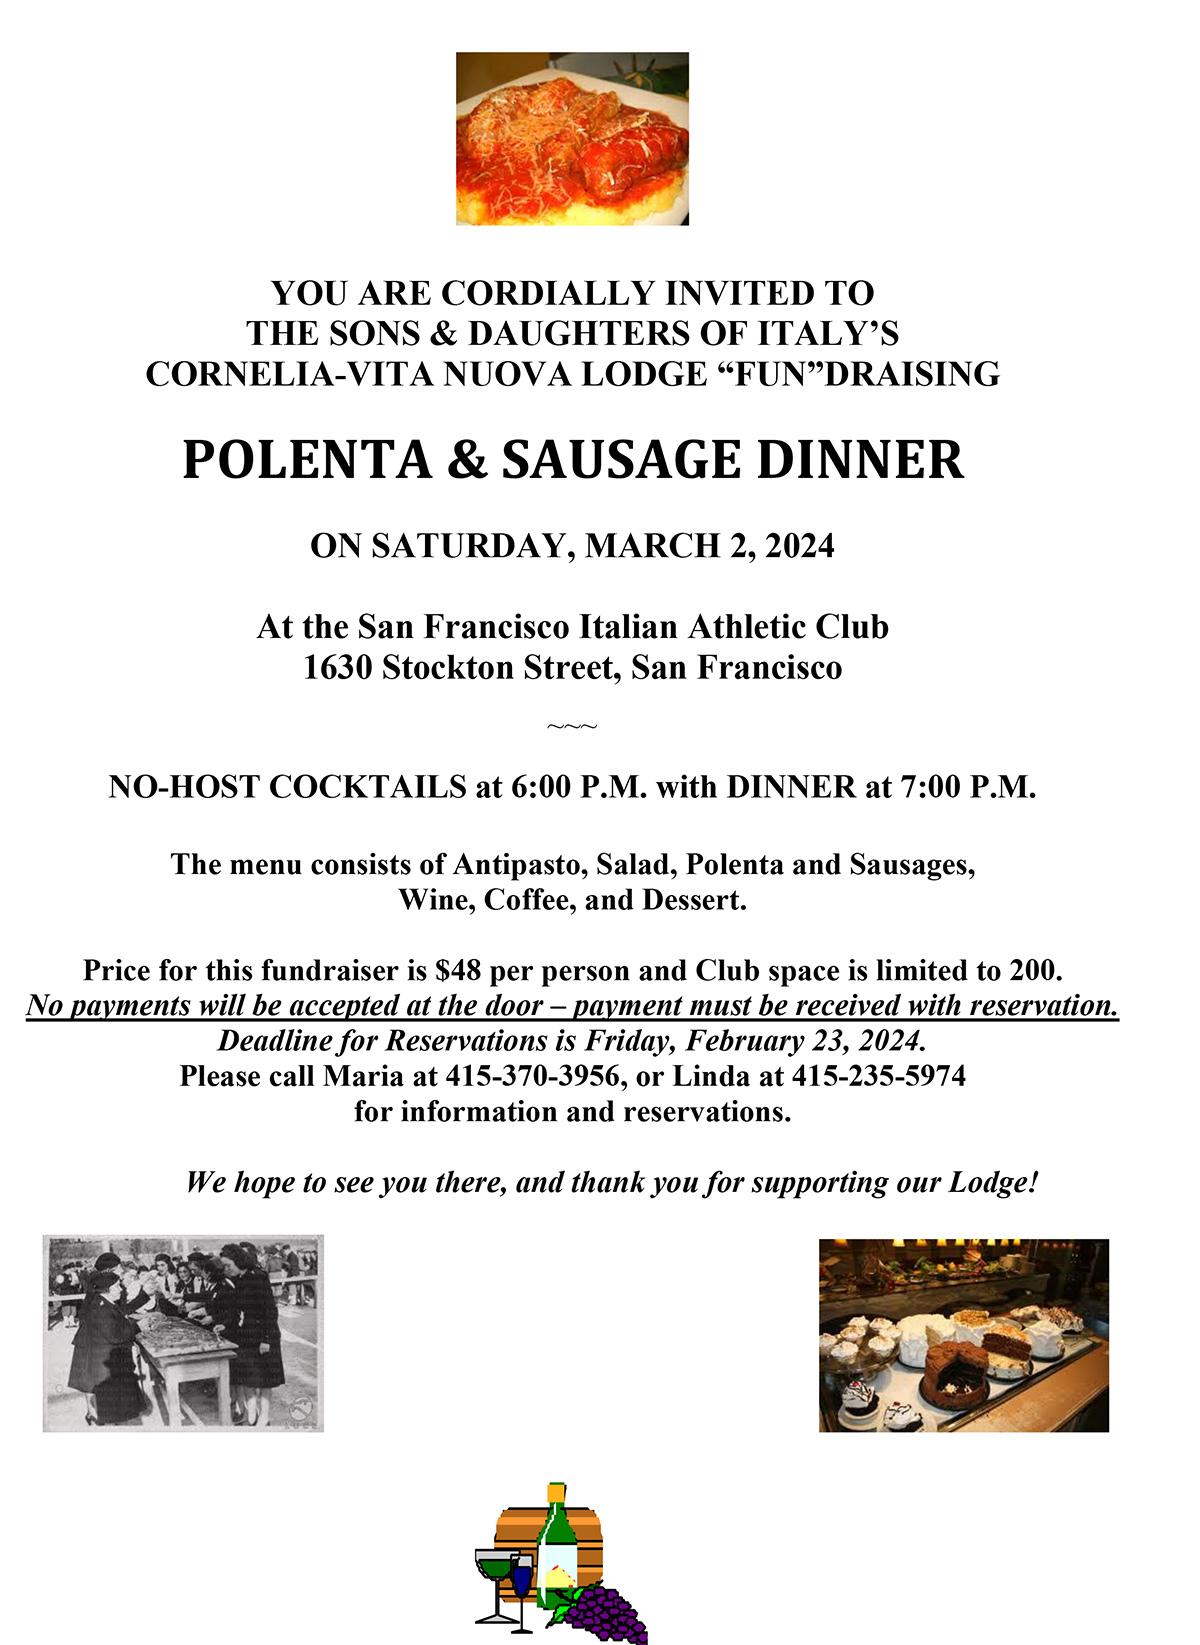 Polenta and Sausage Dinner